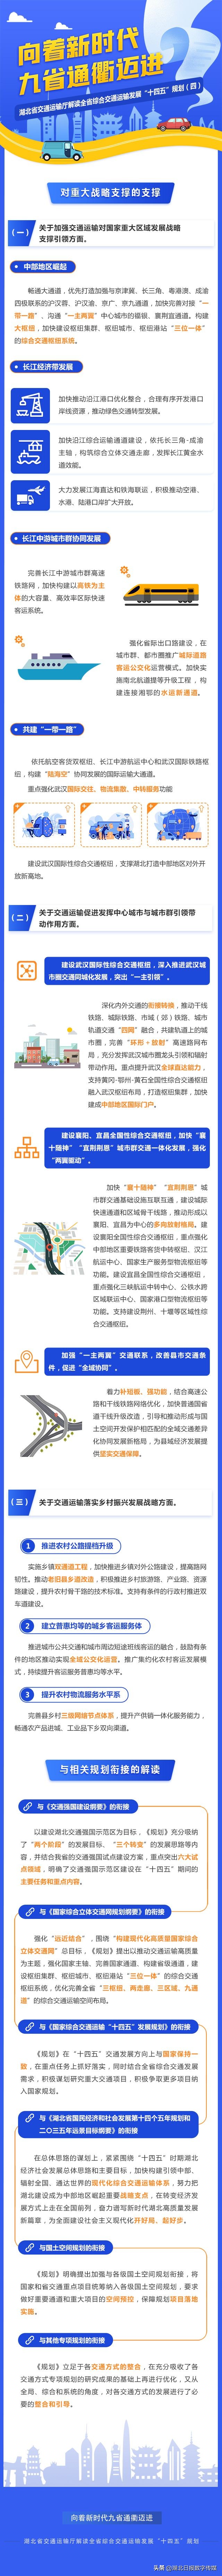 图解-湖北省综合交通运输发展“十四五”规划解读(四)